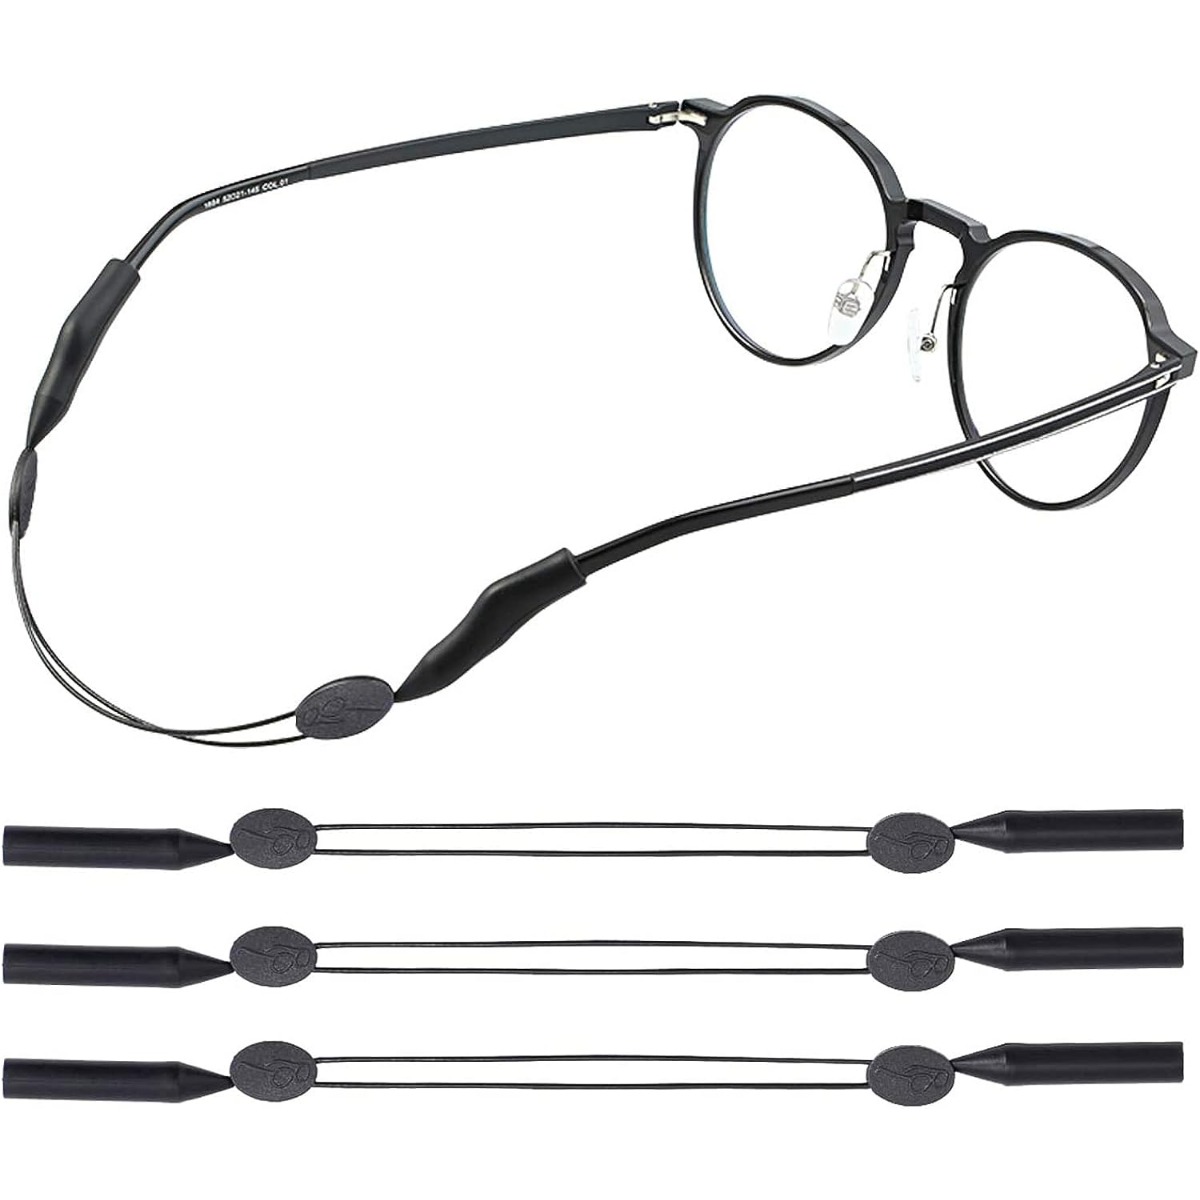 glasses holders men